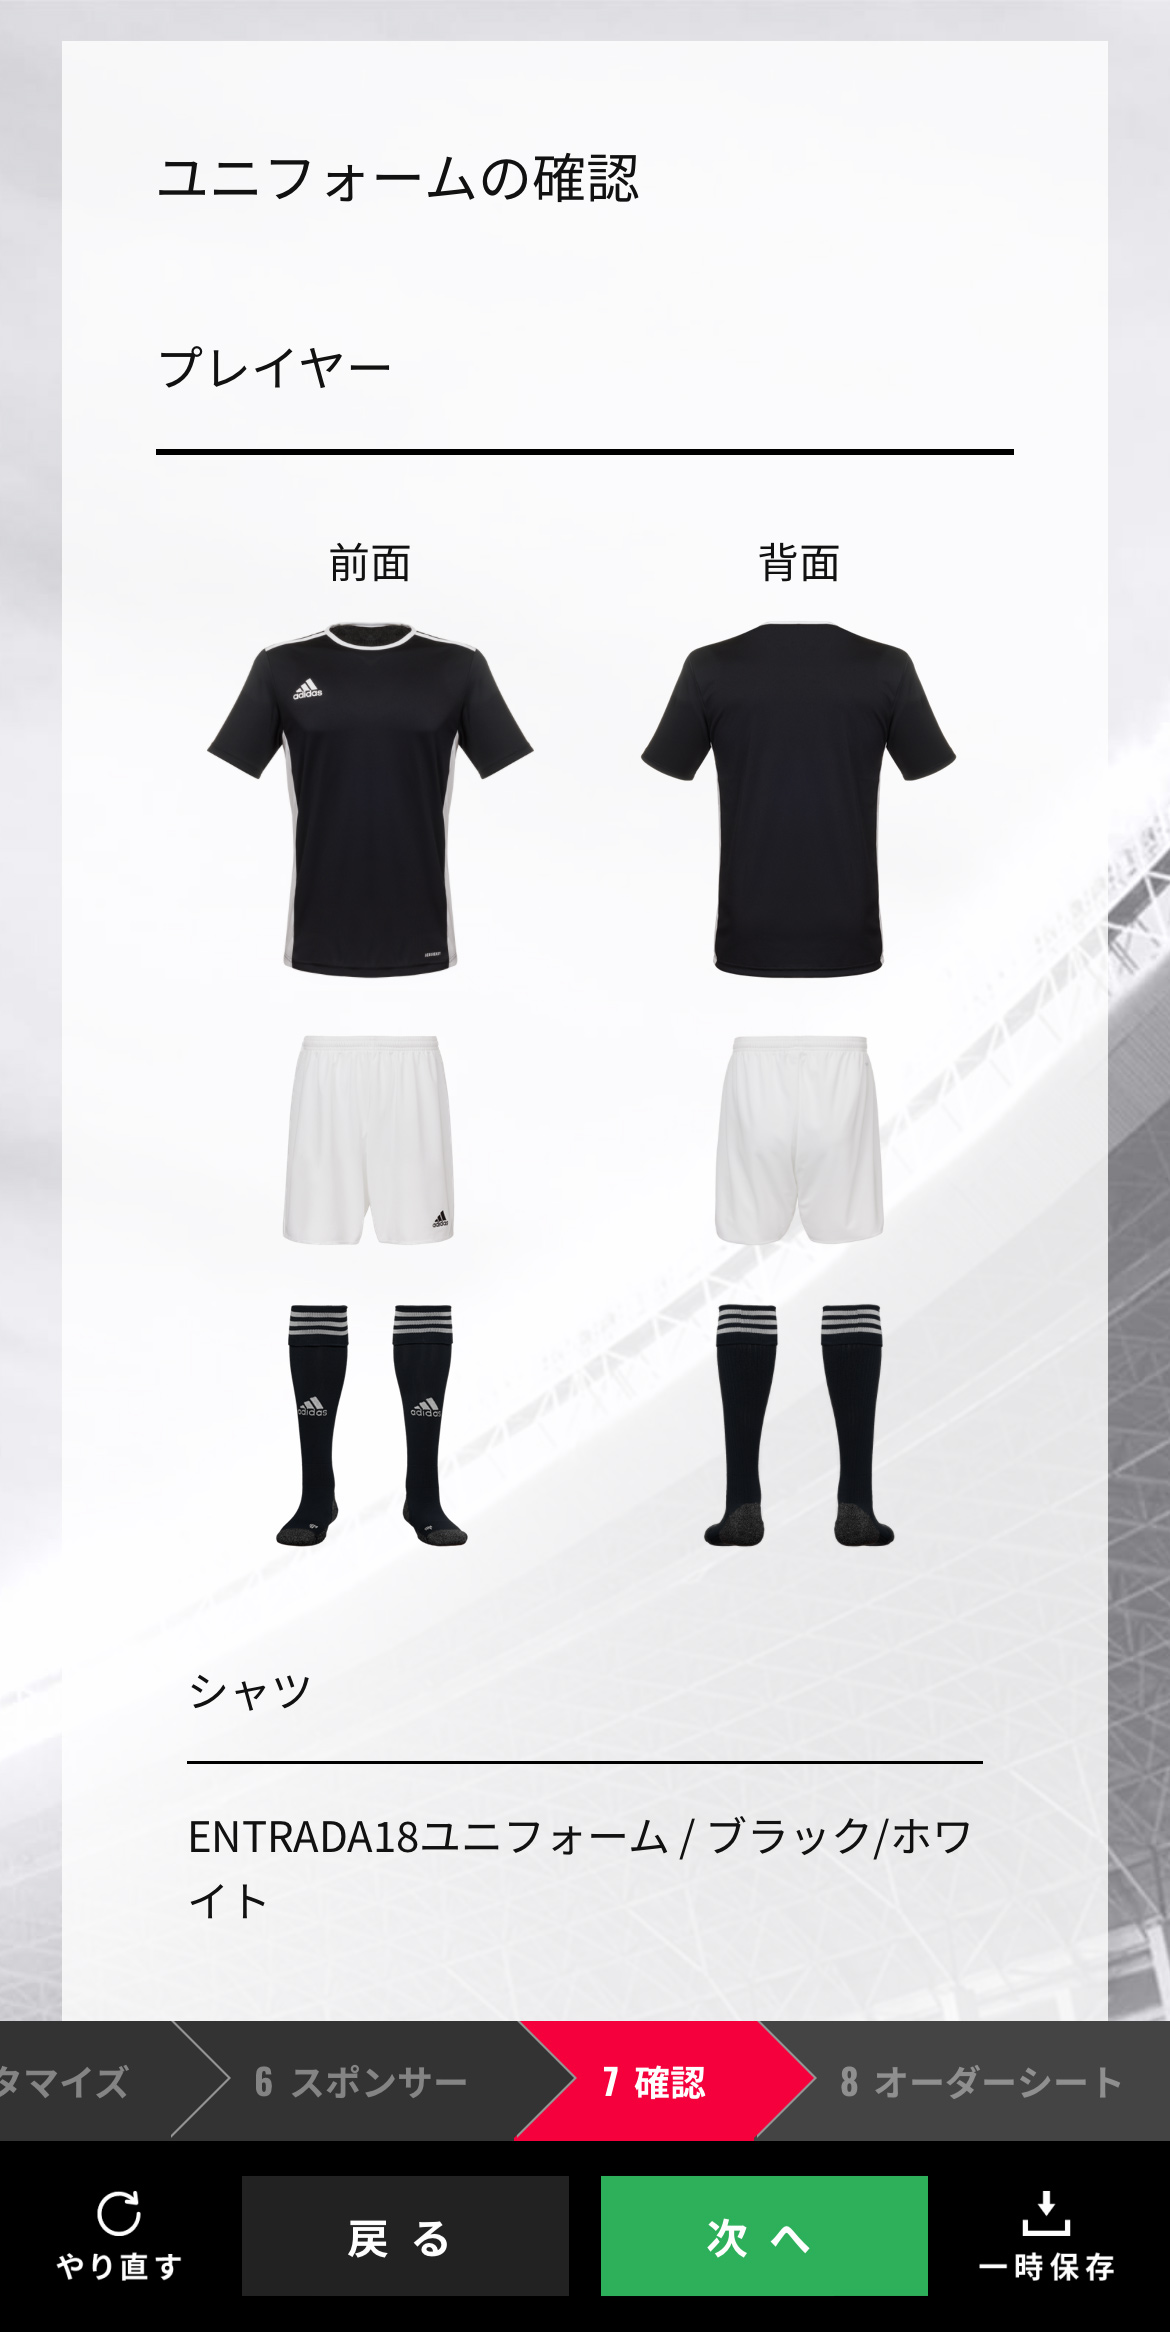 日本のサッカーのユニフォームに 黒 が少ない理由